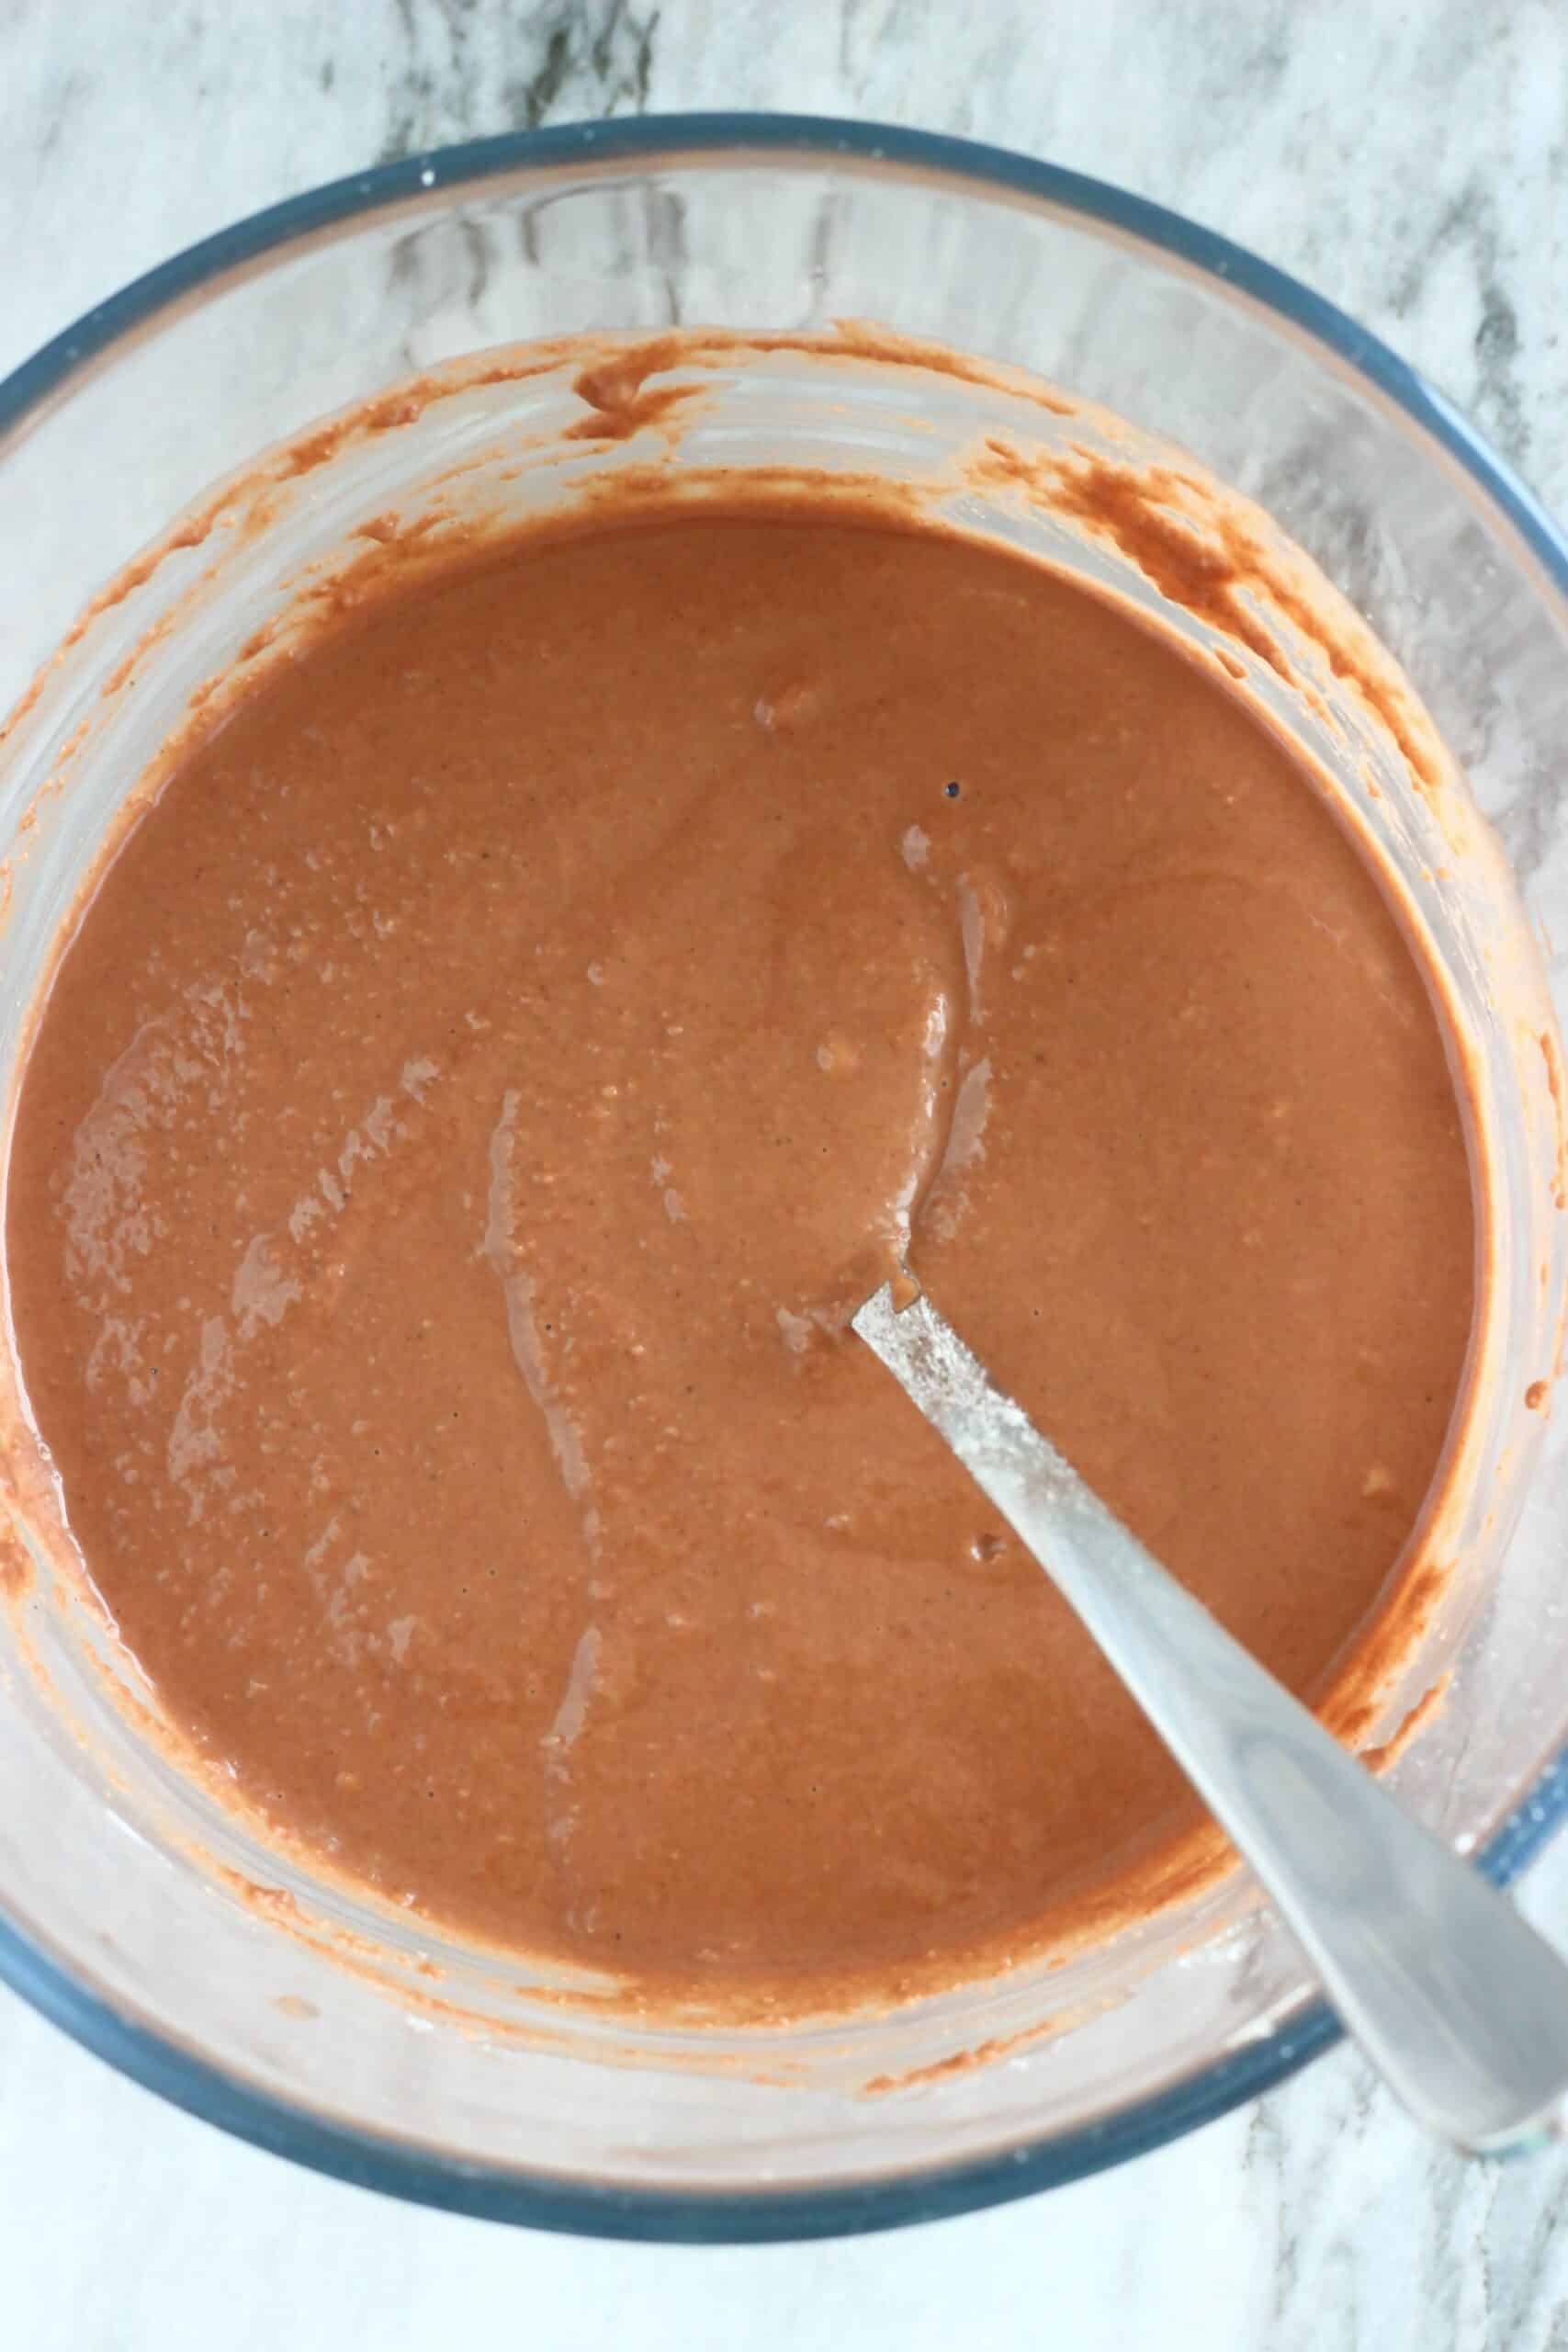 Gluten-free vegan chocolate pancakes batter in a bowl